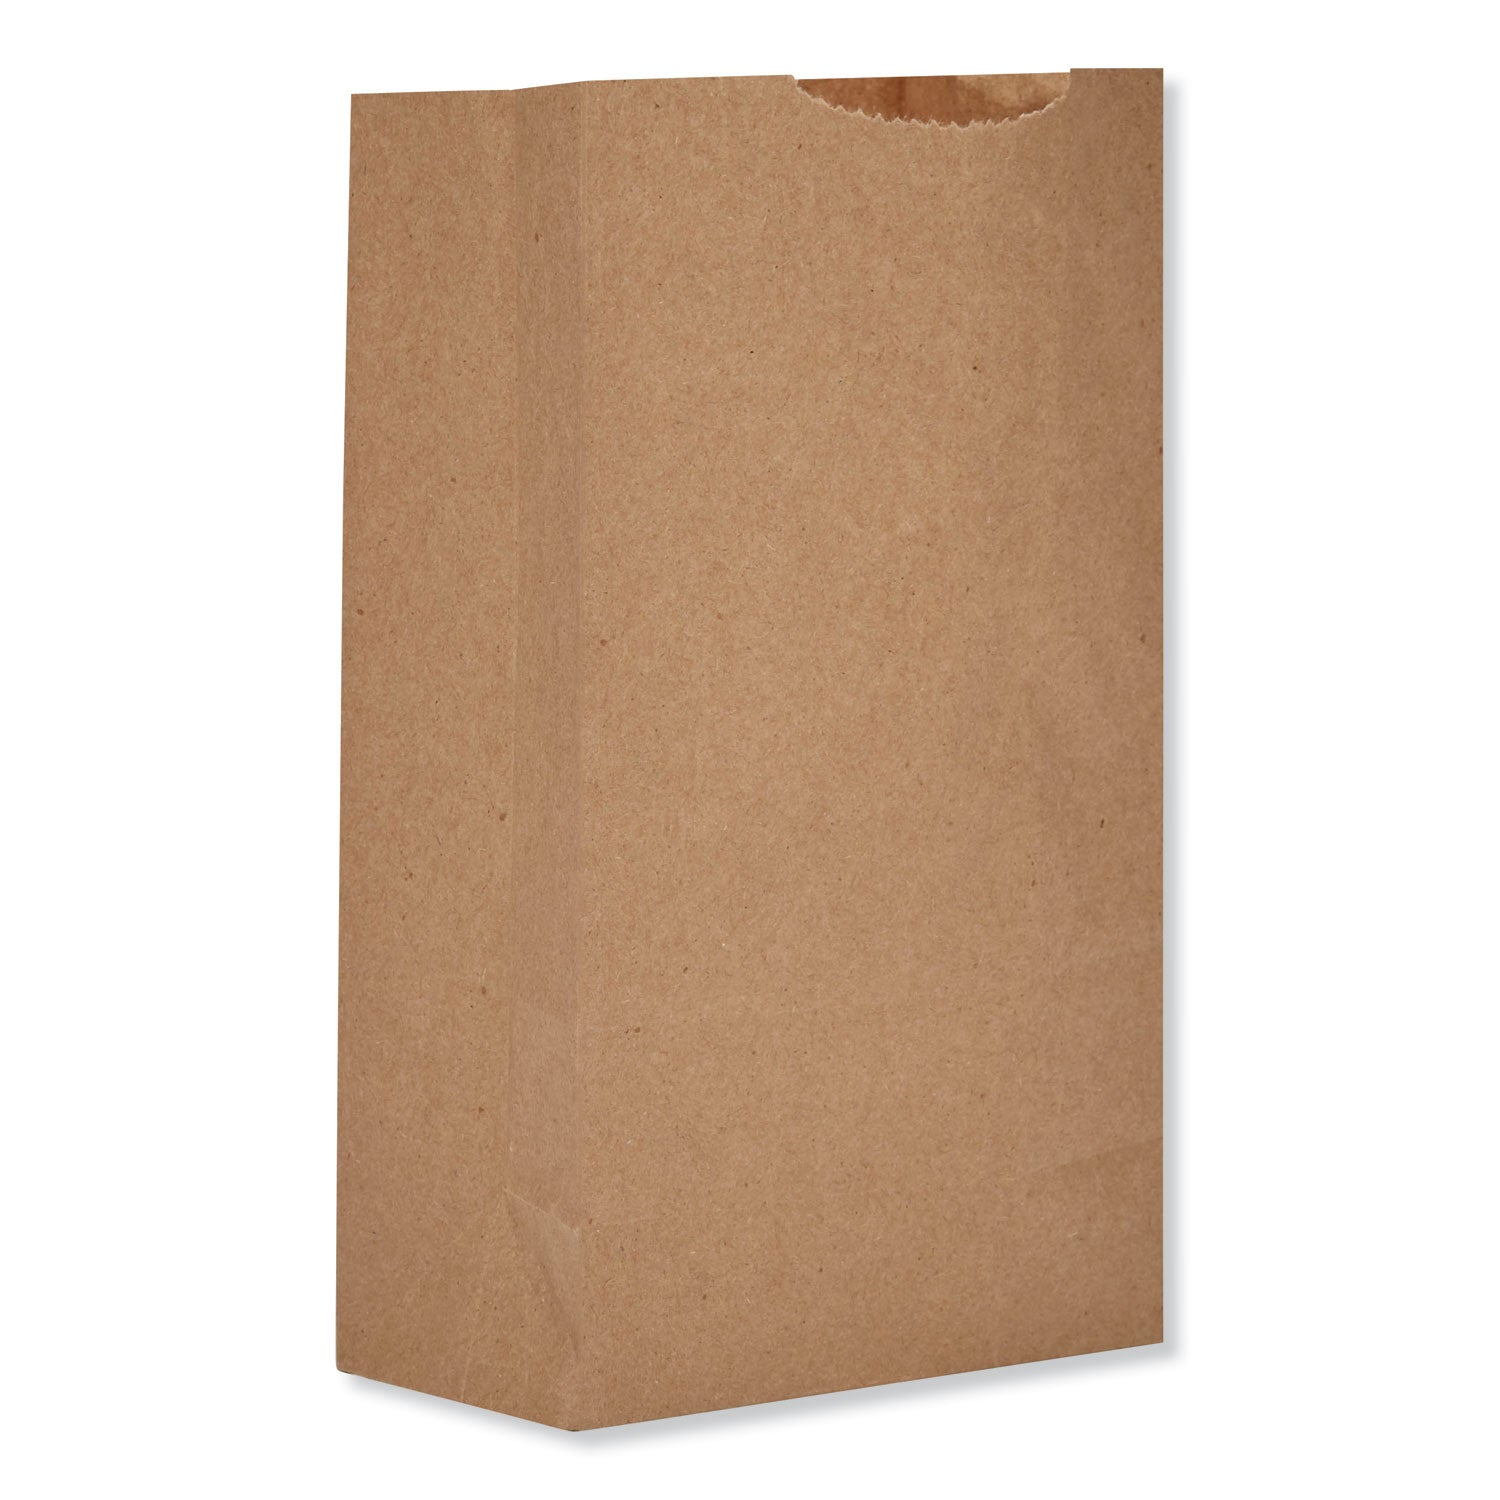 grocery-paper-bags-52-lb-capacity-#2-406-x-268-x-812-kraft-250-bags-bundle-2-bundles_baggx2500 - 1